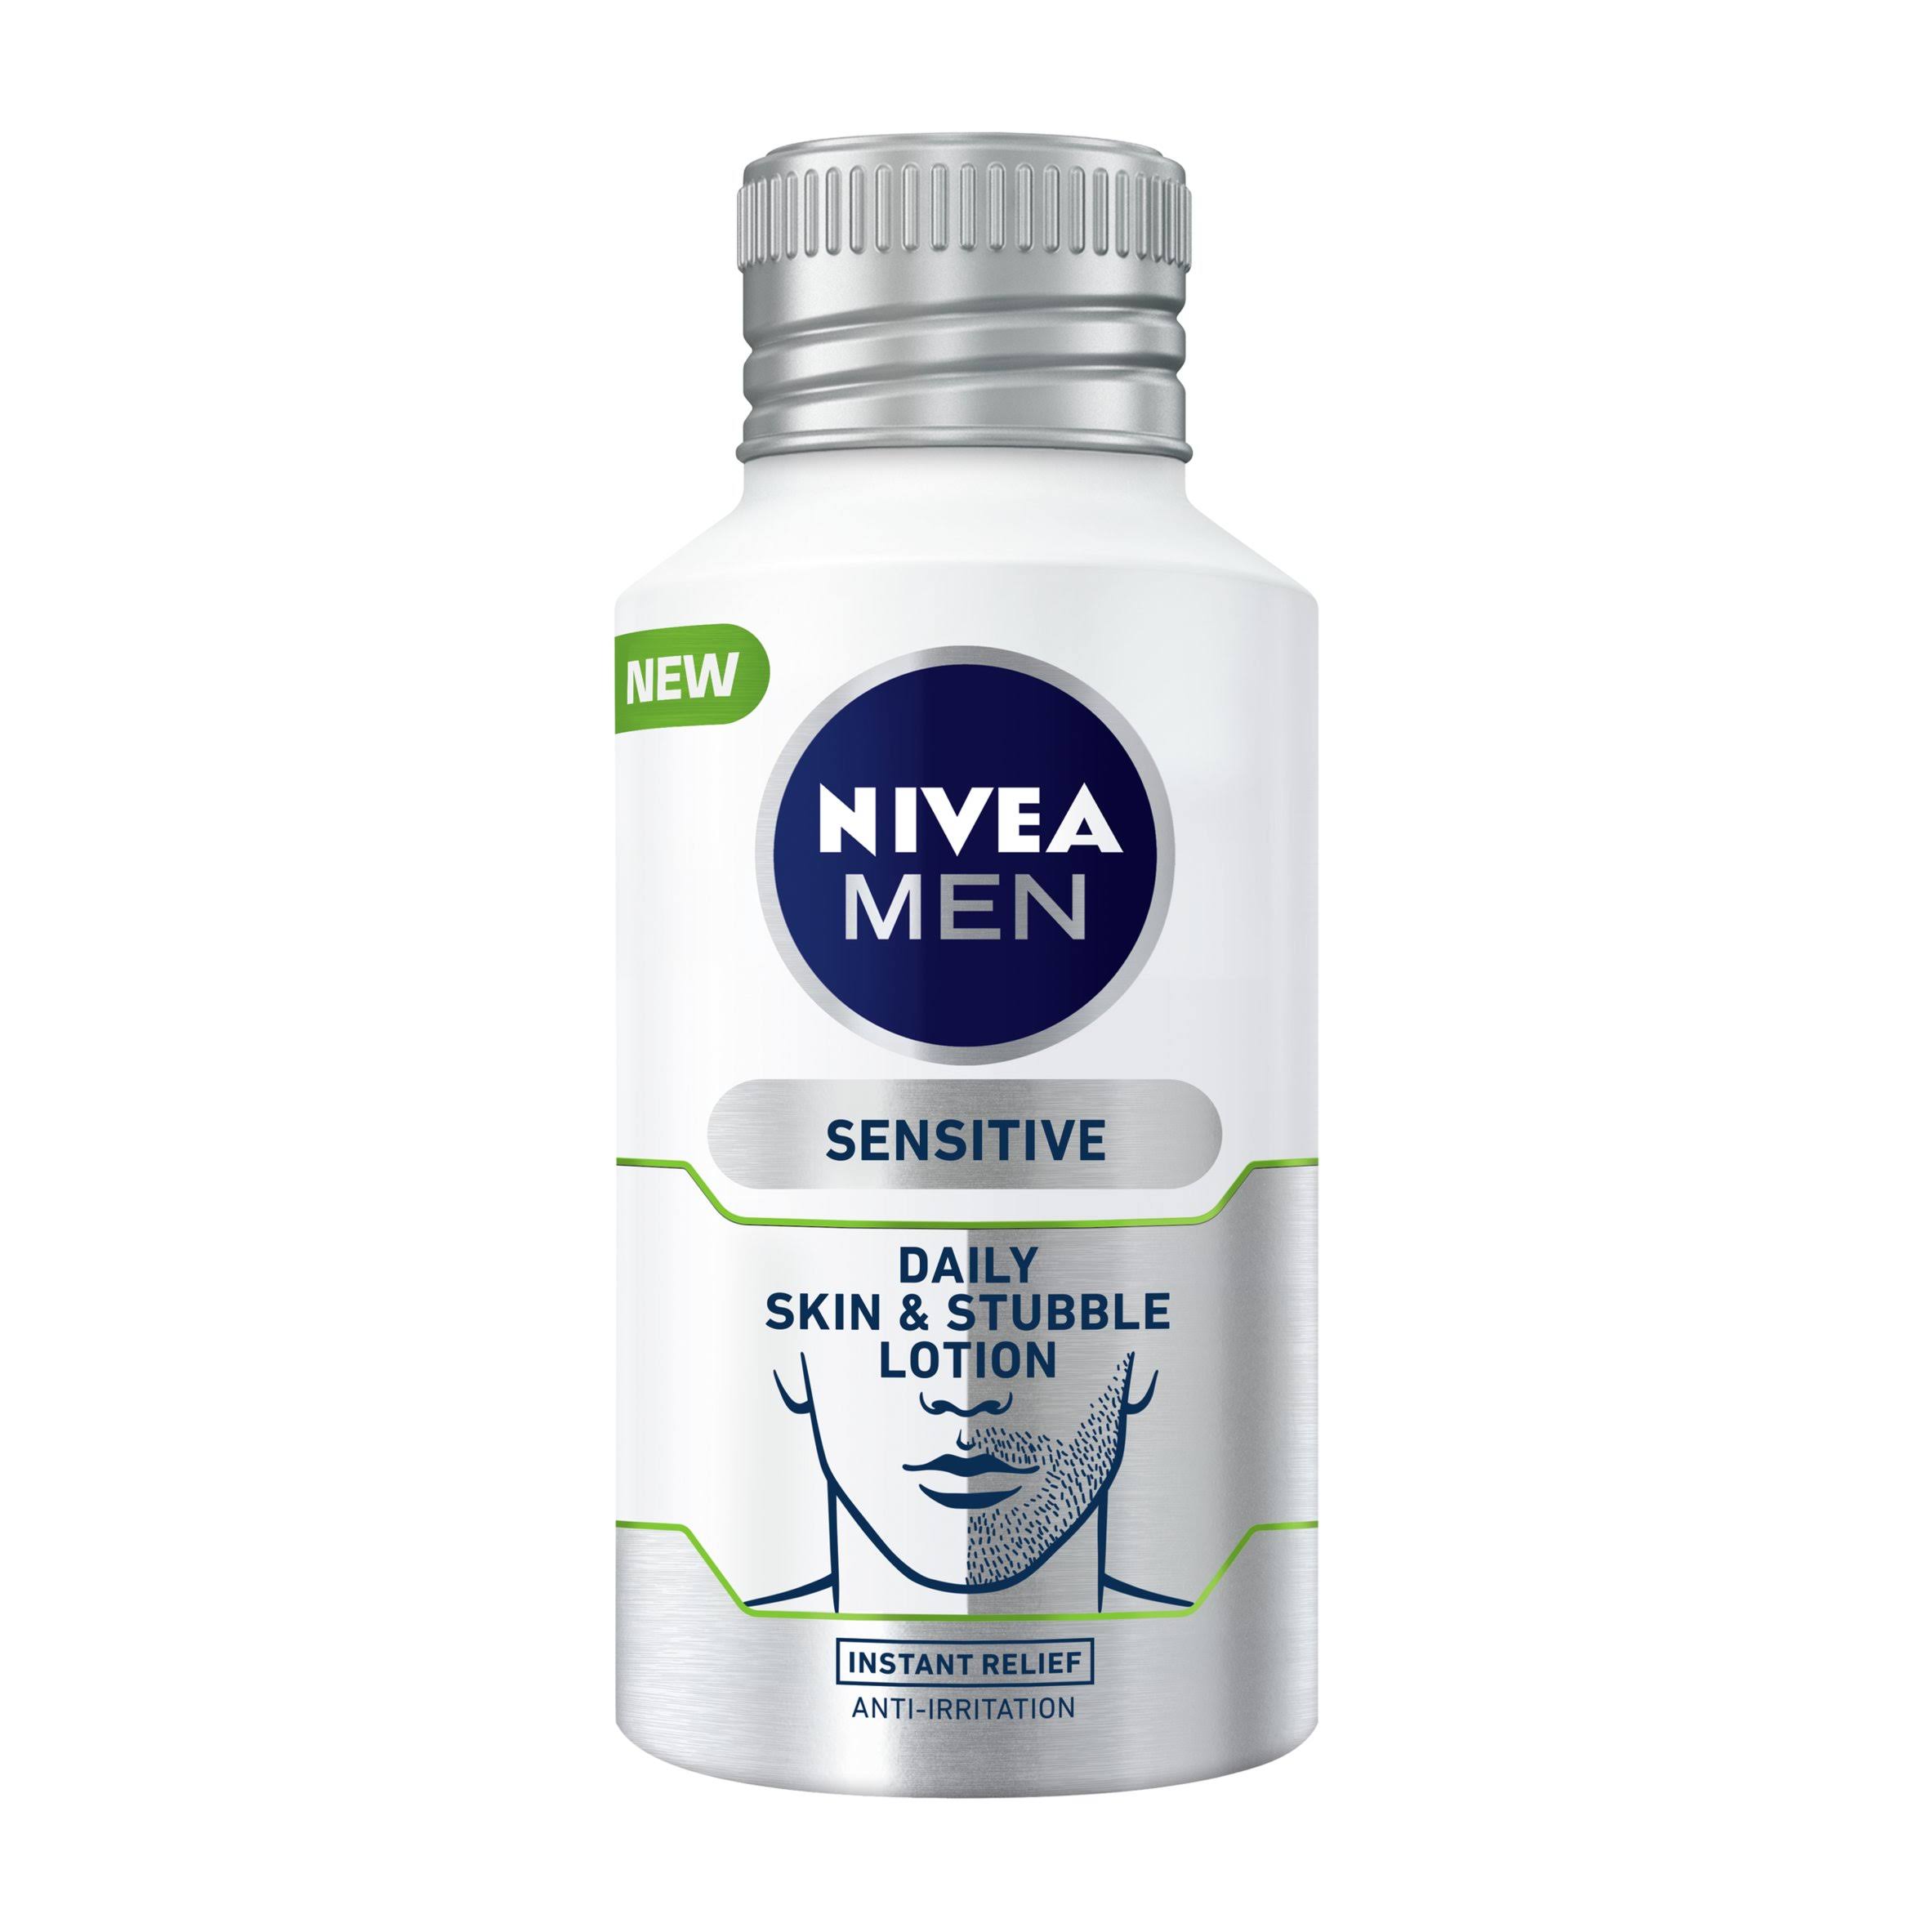 Nivea Men Sensitive Daily Skin and Stubble Lotion - 125ml